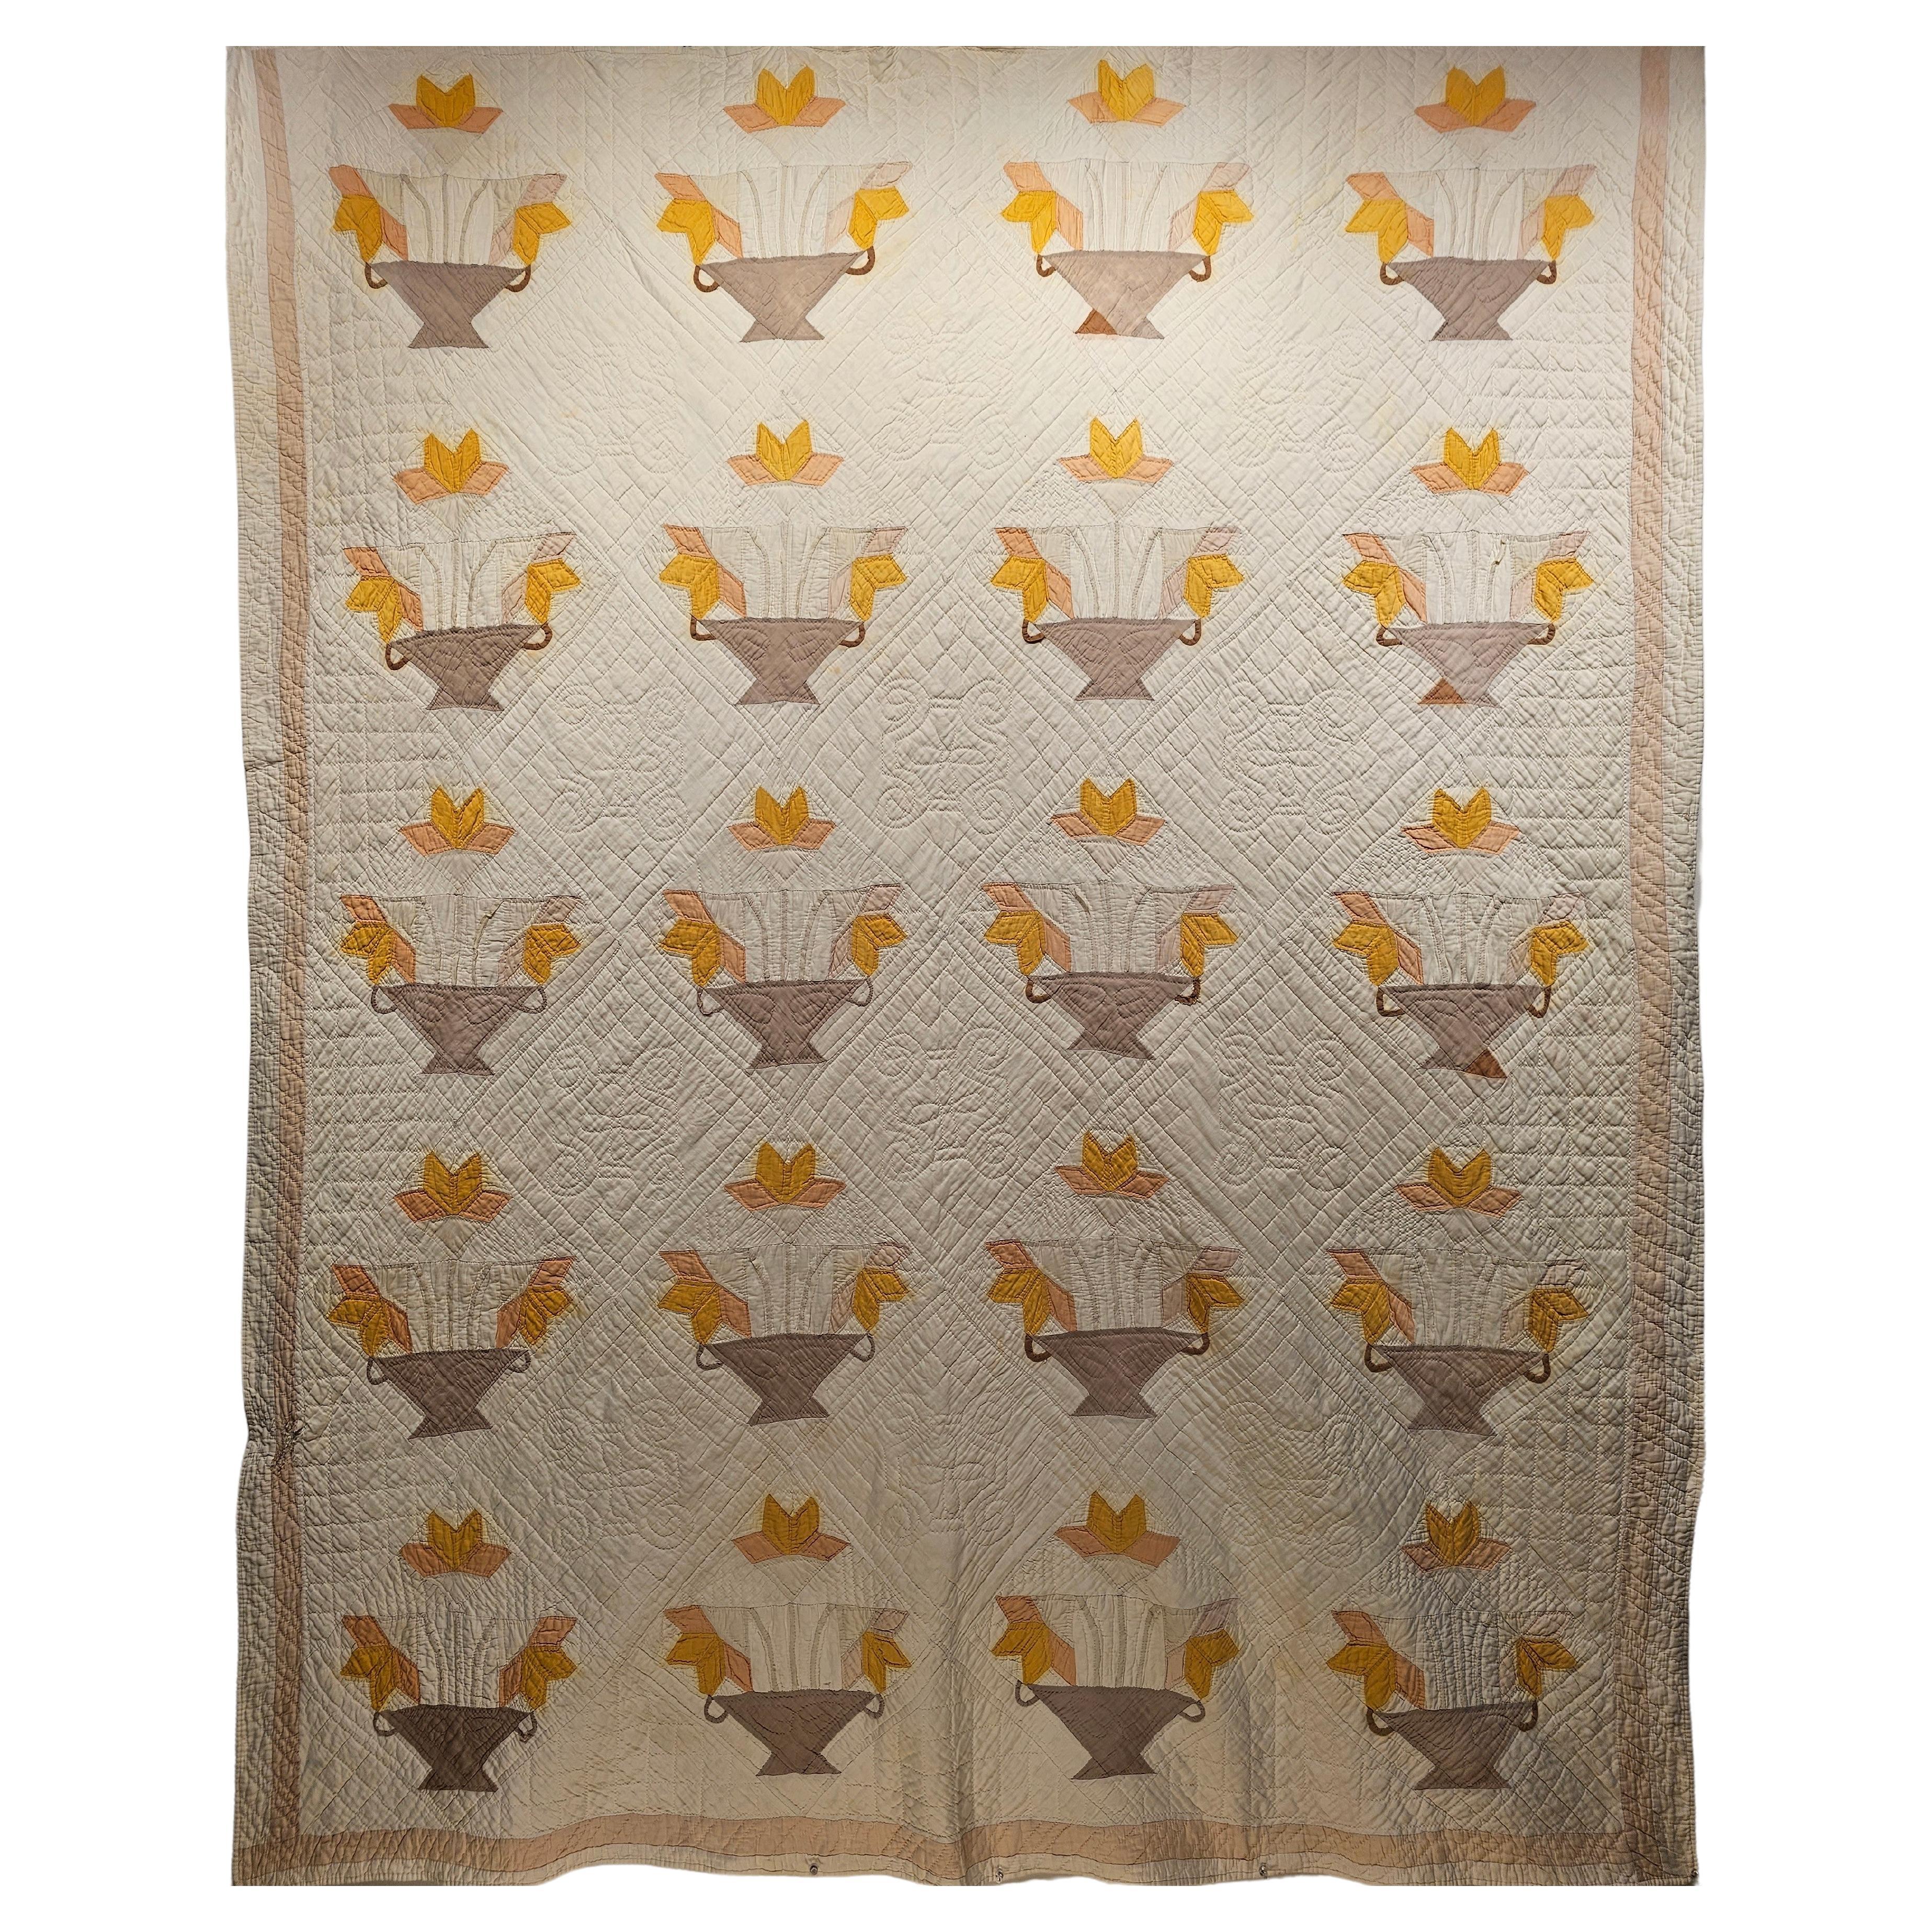 Vintage Hand Stitched Applique Quilt in Korb-Muster in Elfenbein, Brown, Gelb